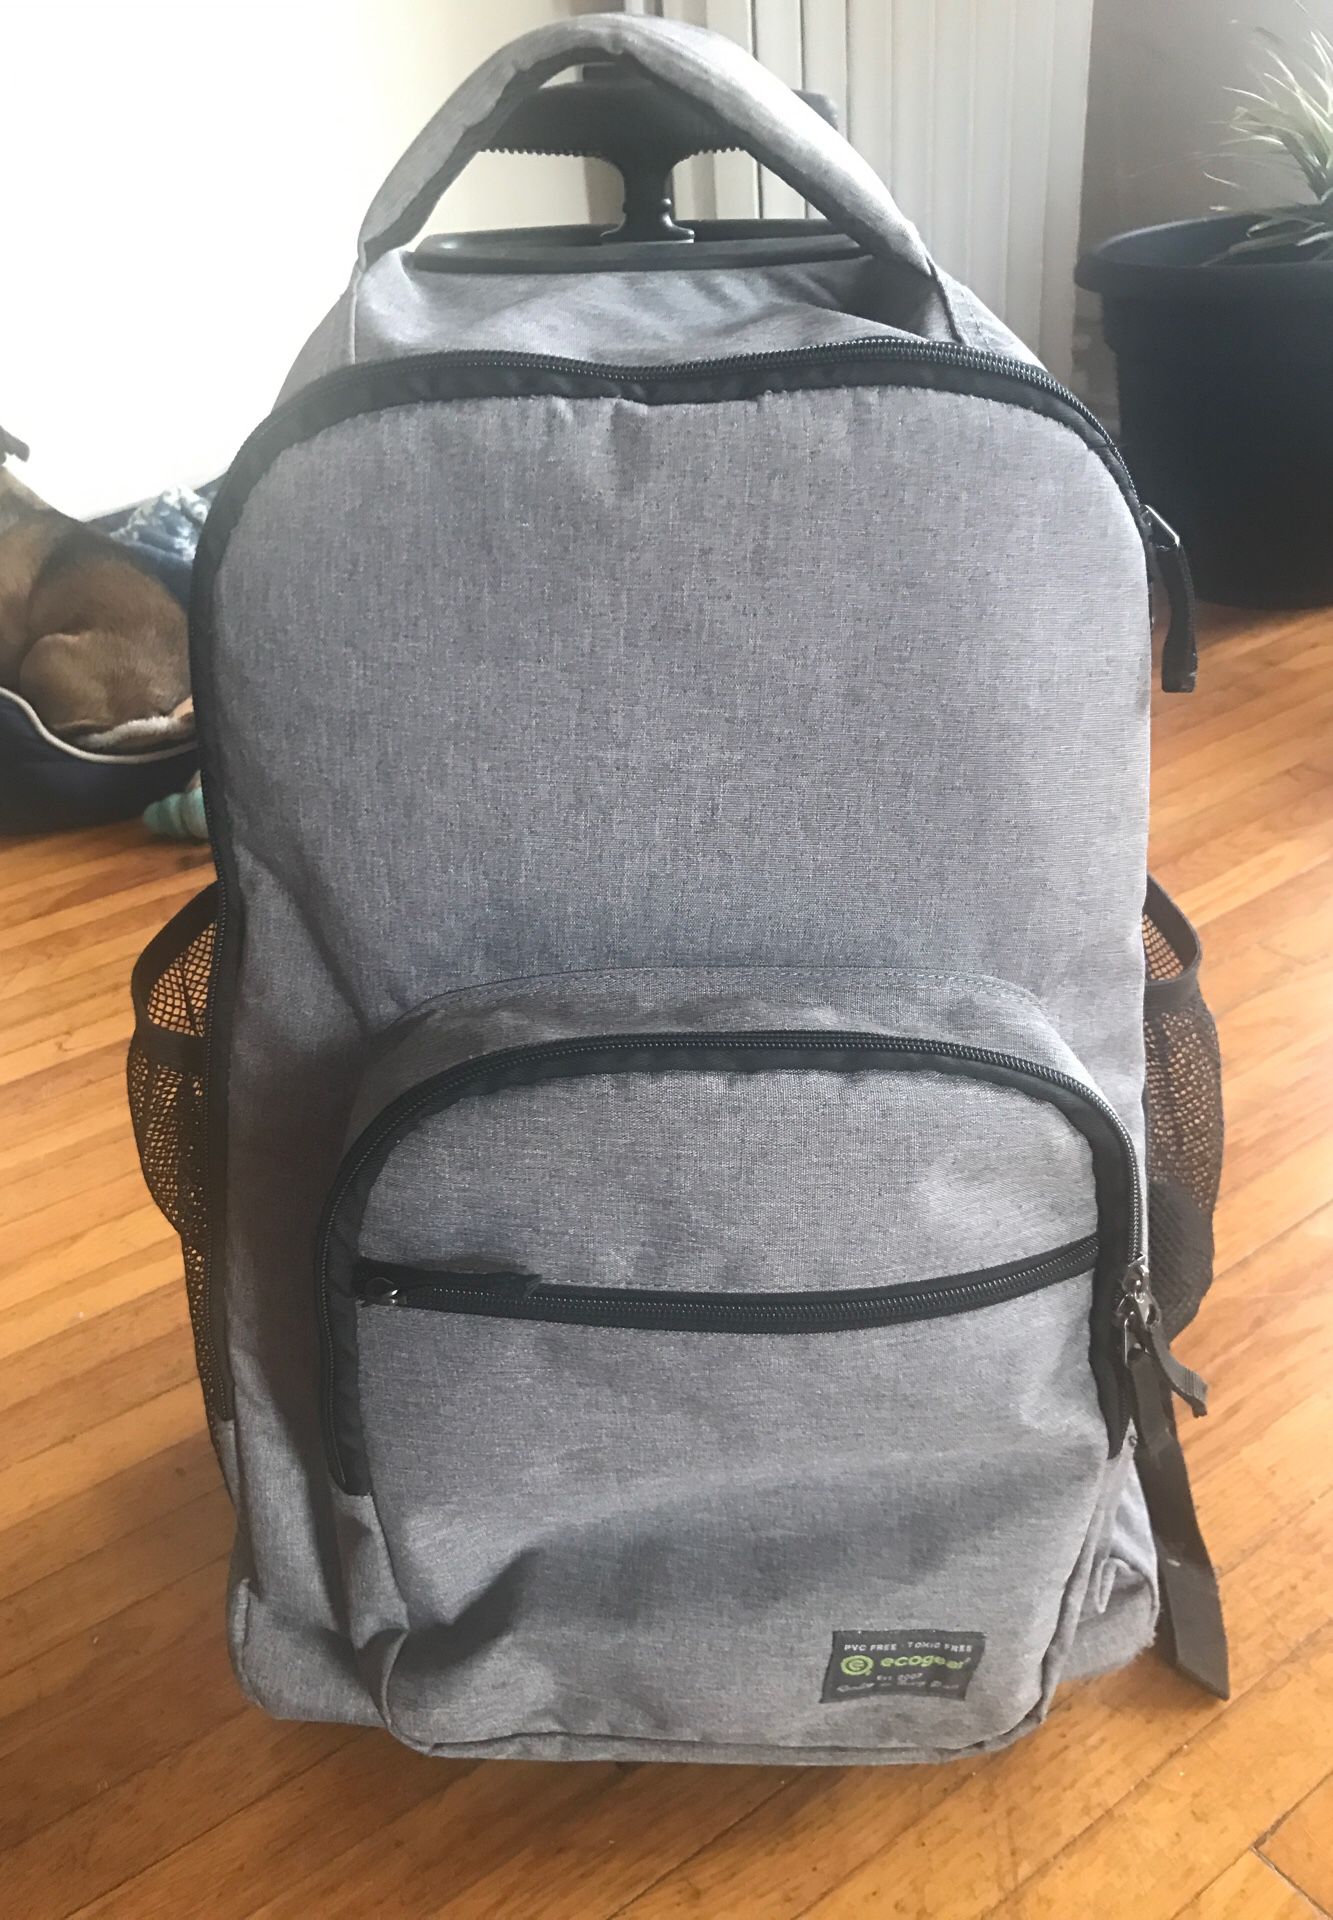 Eco-gear gray backpack w broken wheel